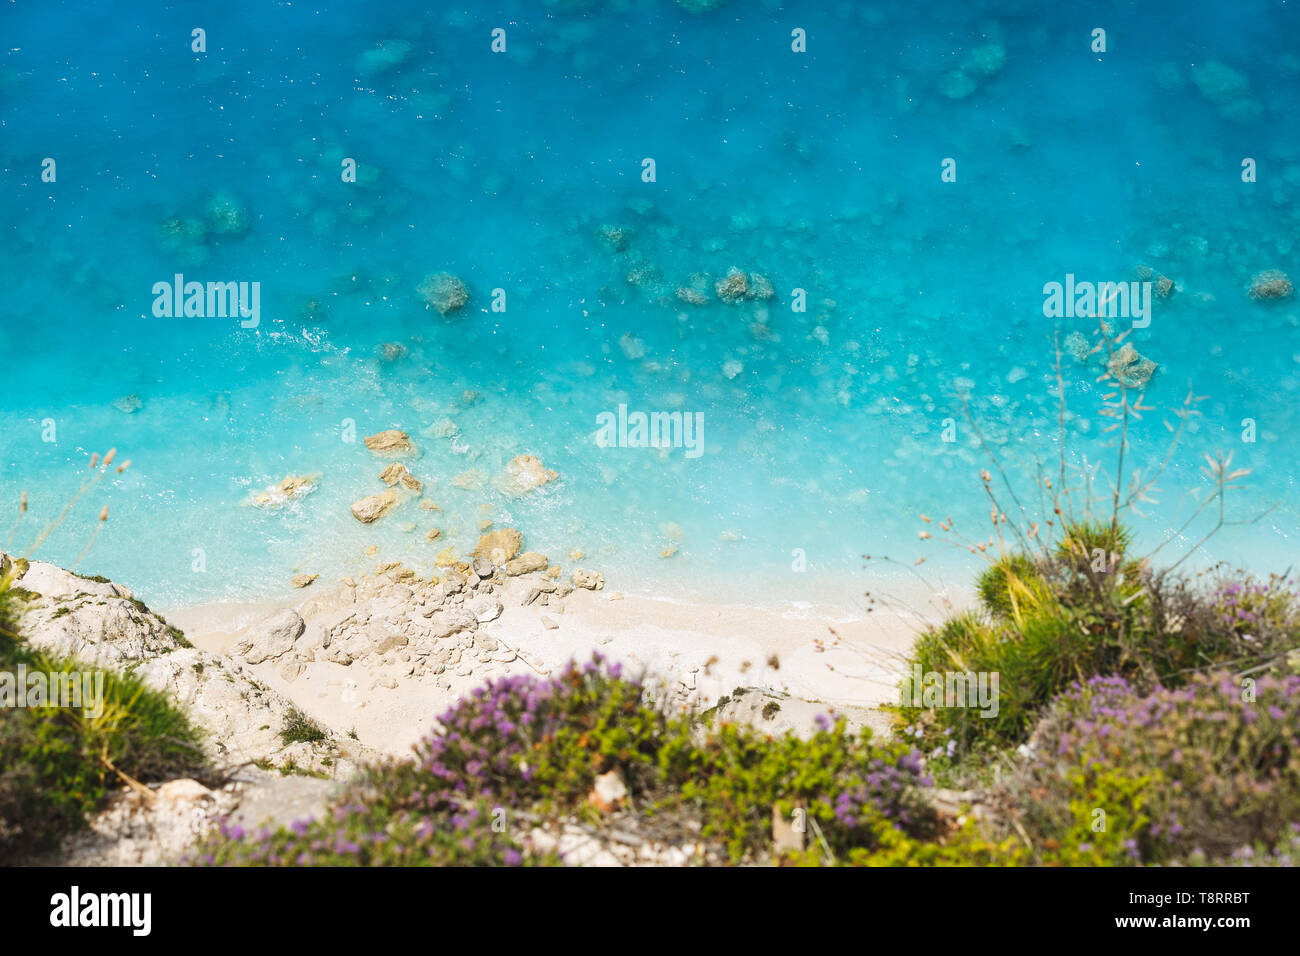 Vue aérienne de la plage sauvage de sable à l'eau claire. La floraison du thym sauvage au bord de la falaise, beau fond de plage Banque D'Images